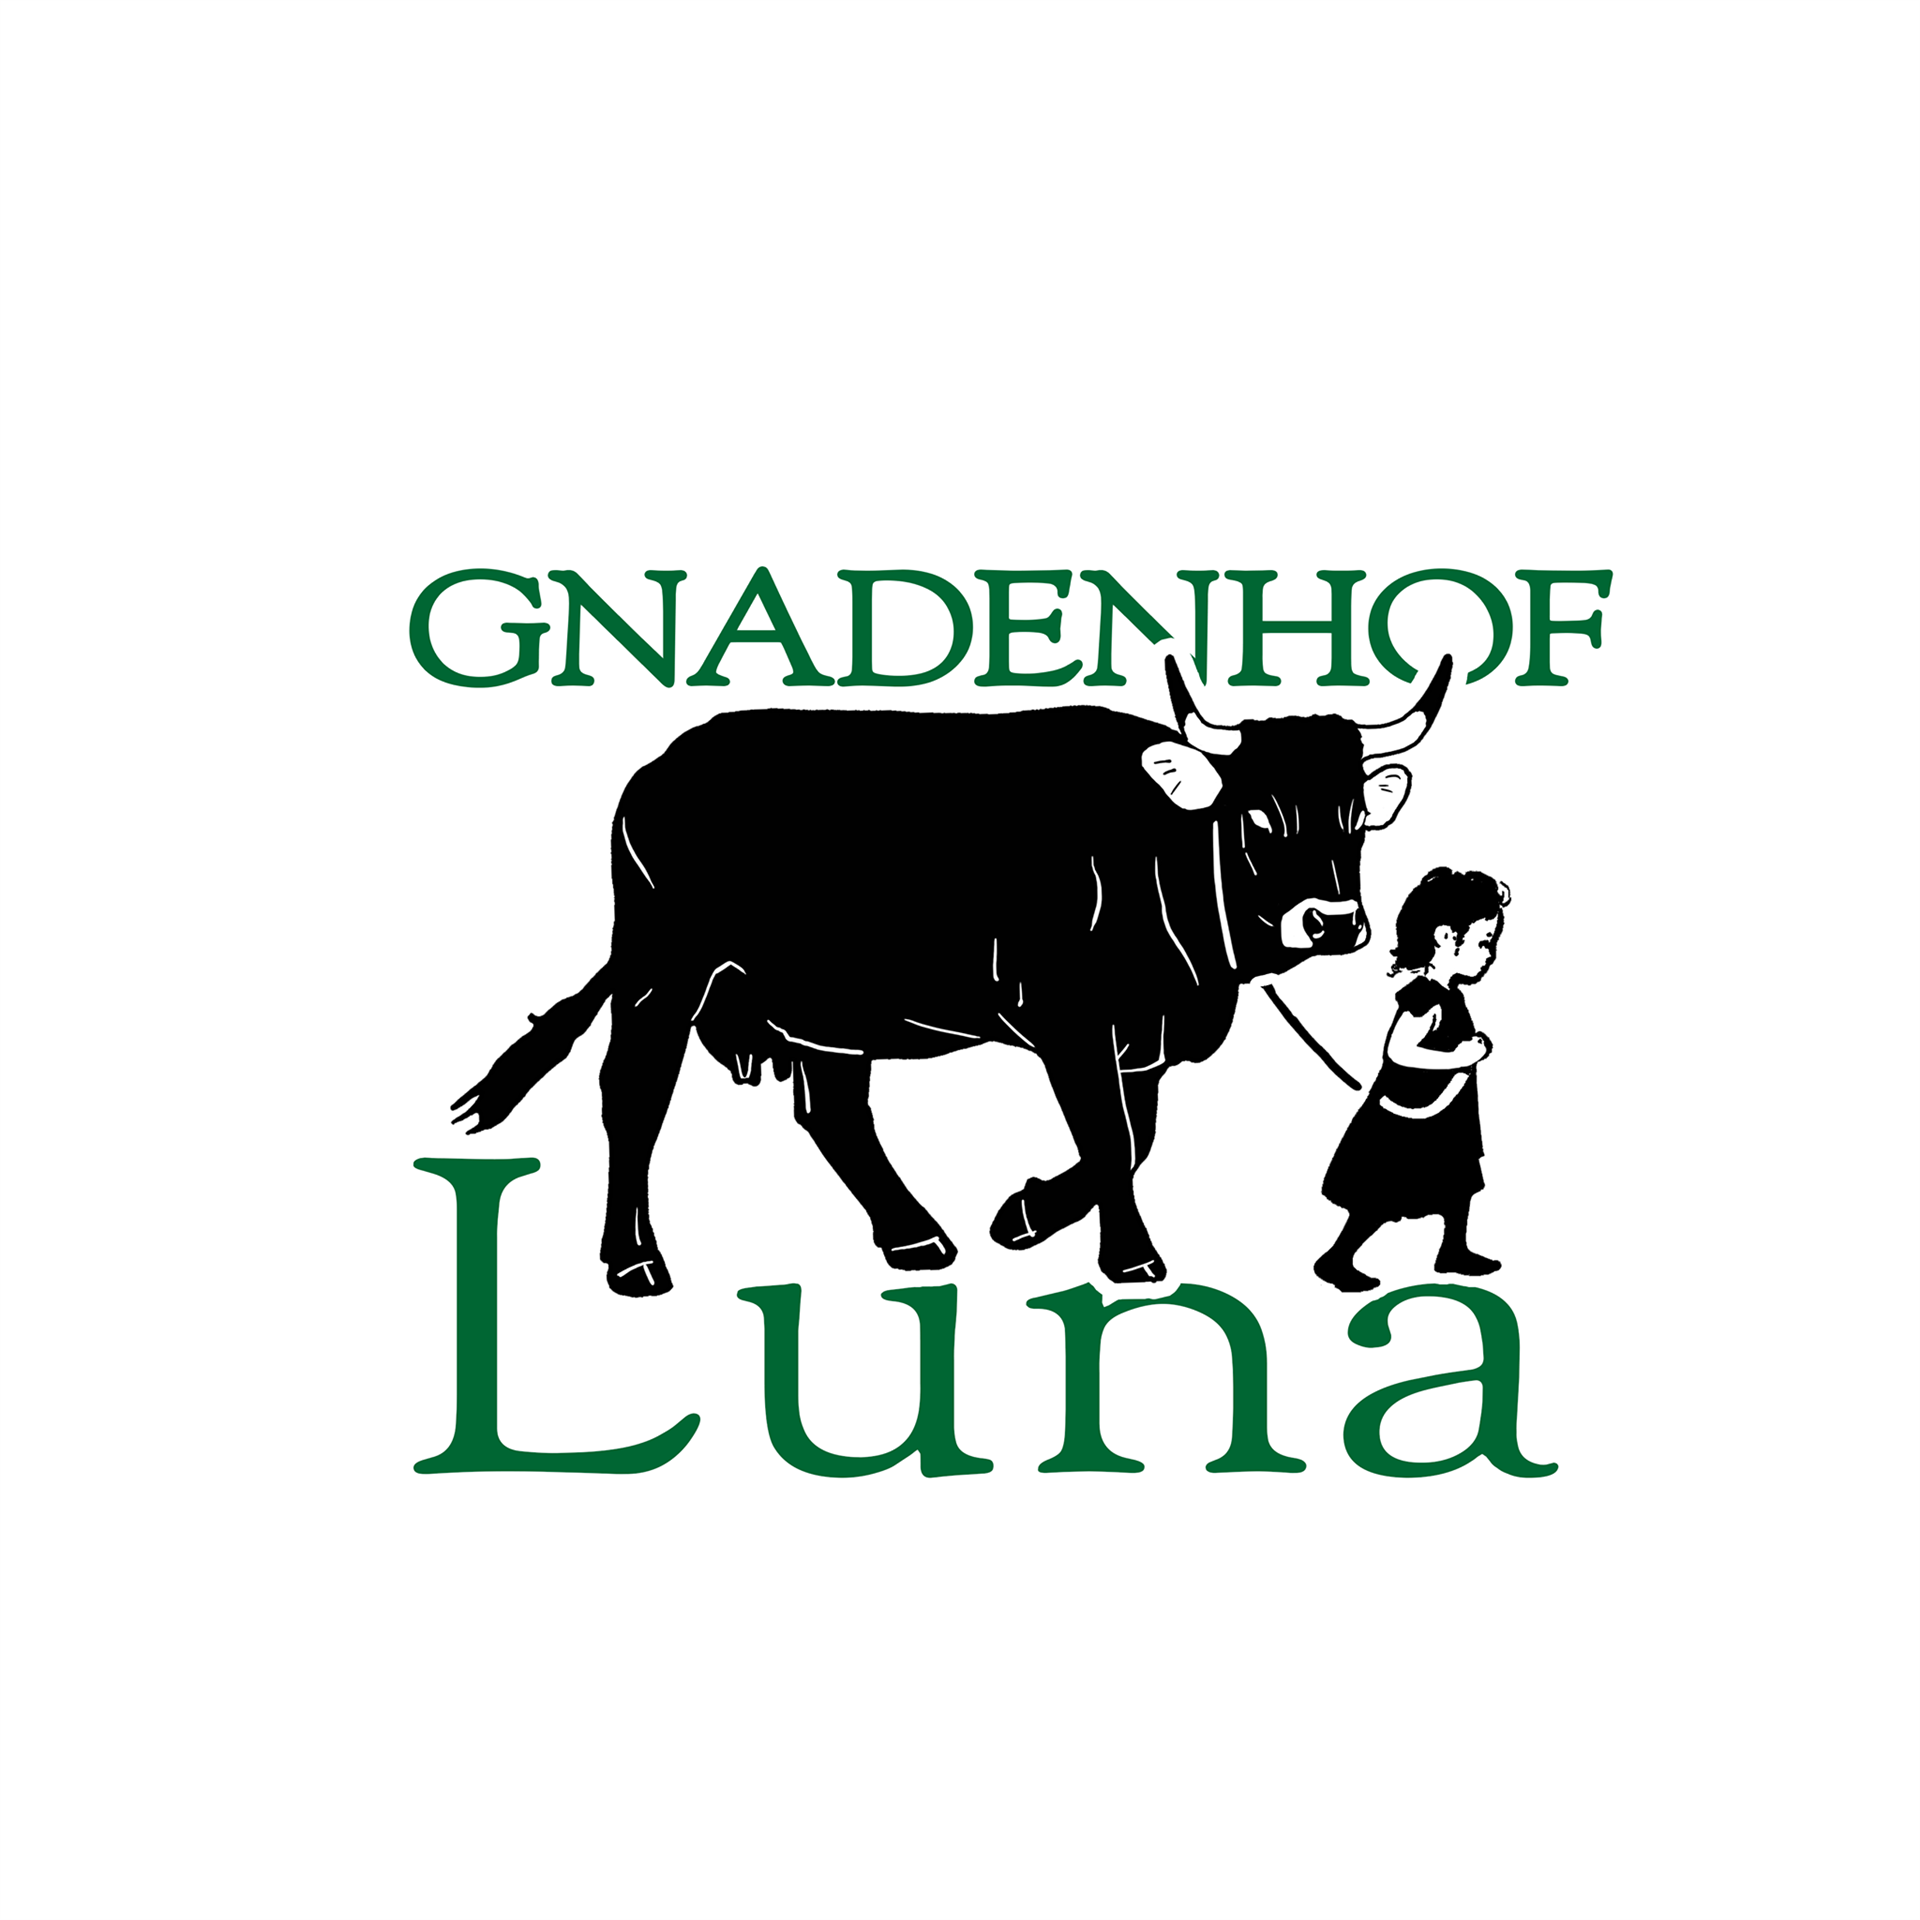 Gnadenhof Luna